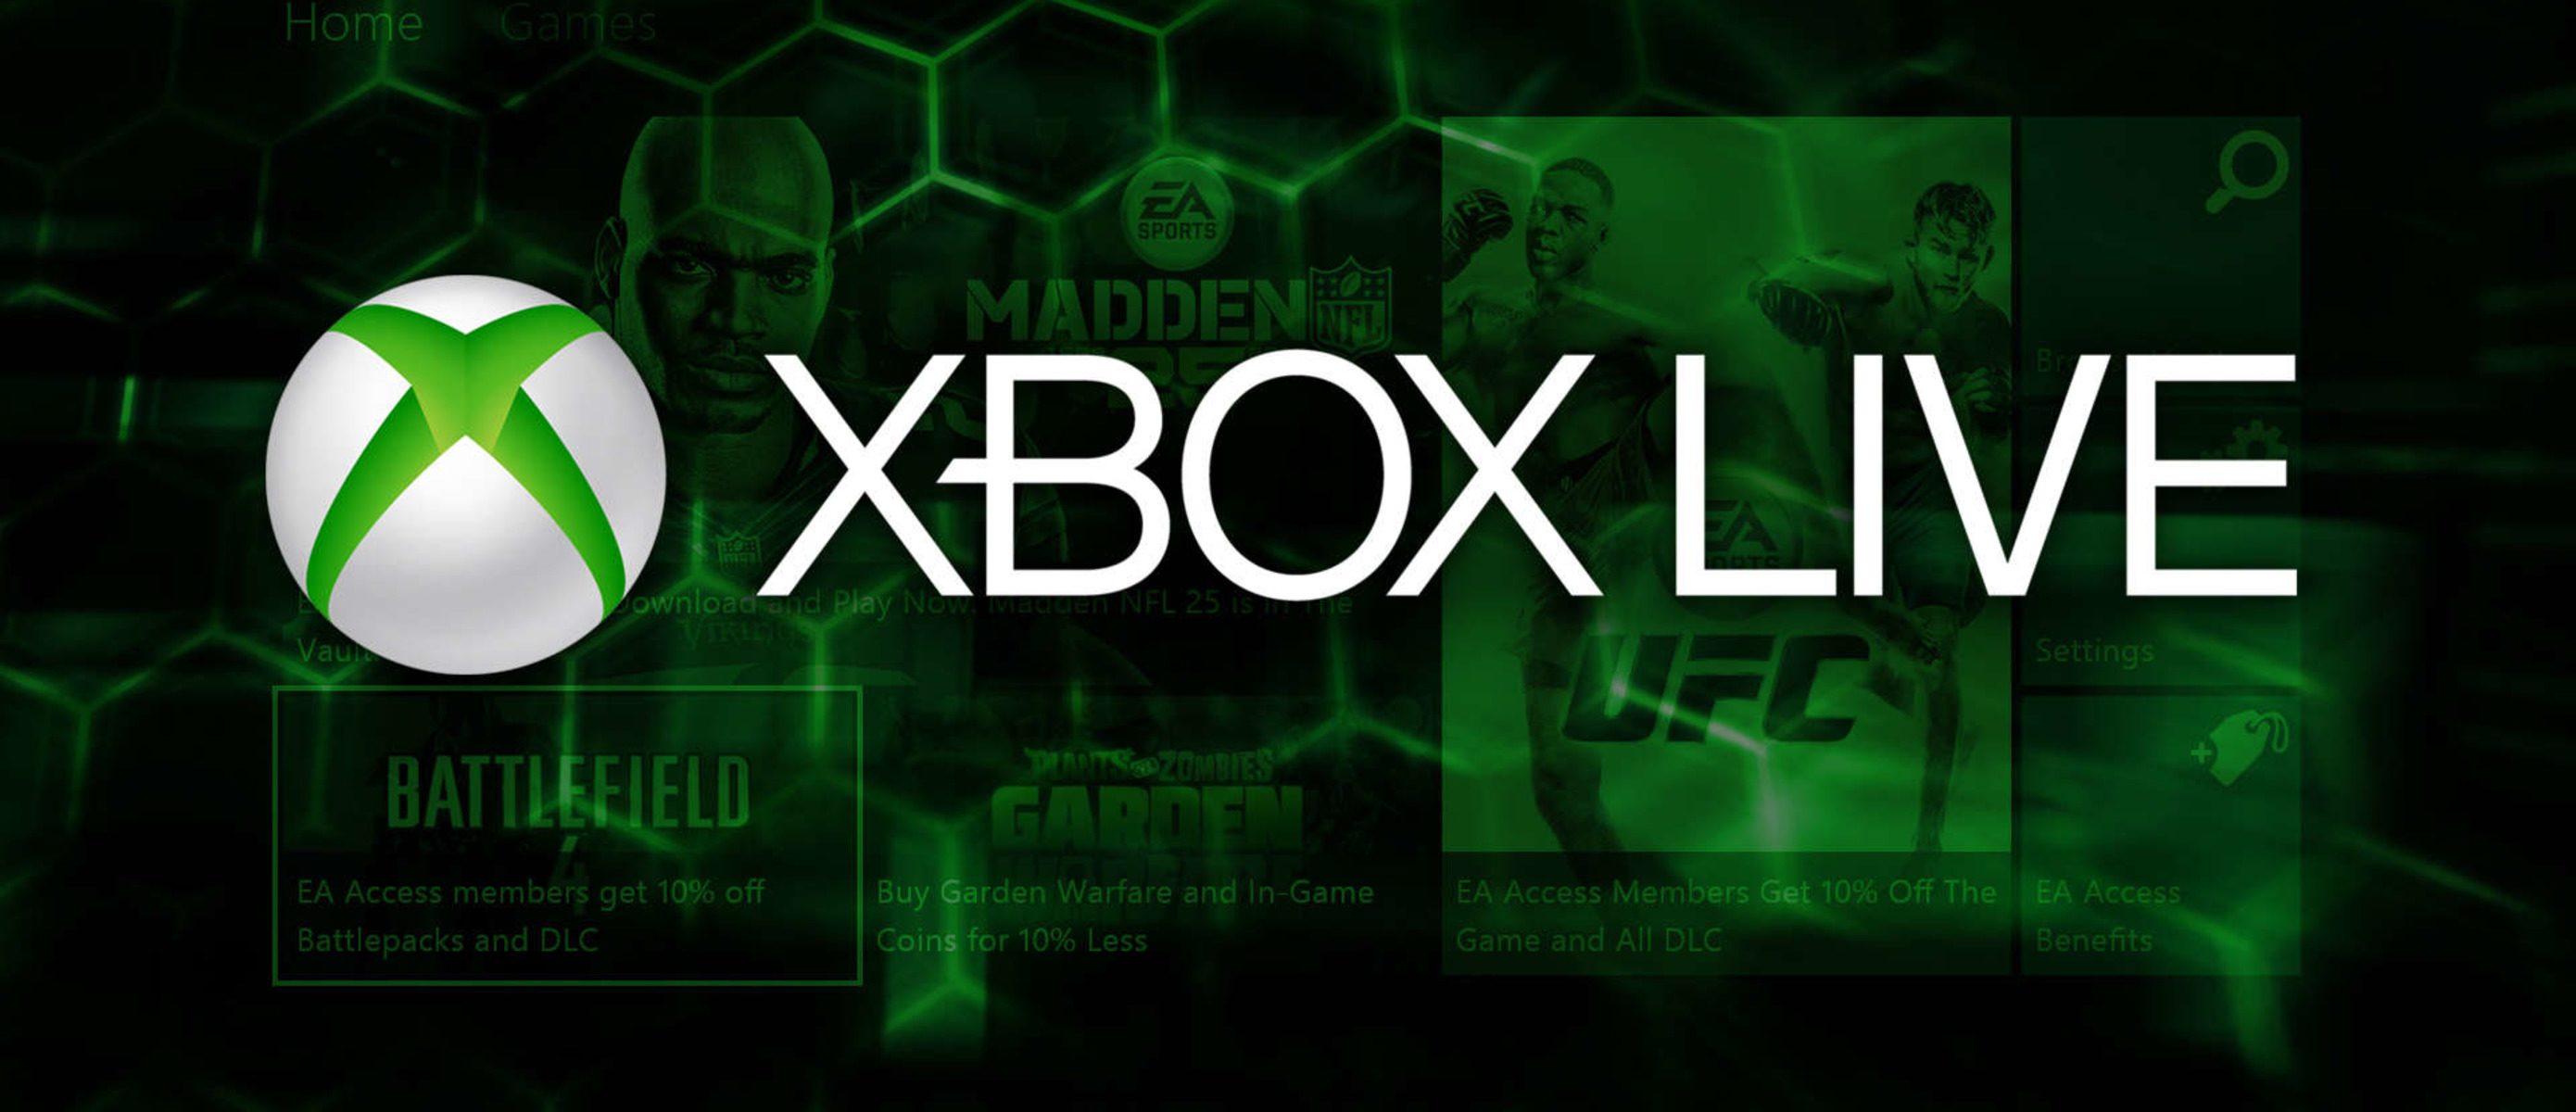 Xbox live games. Xbox Live Gold. Xbox Live: Gold логотип. Xbox Live Xbox 360. Xbolive.